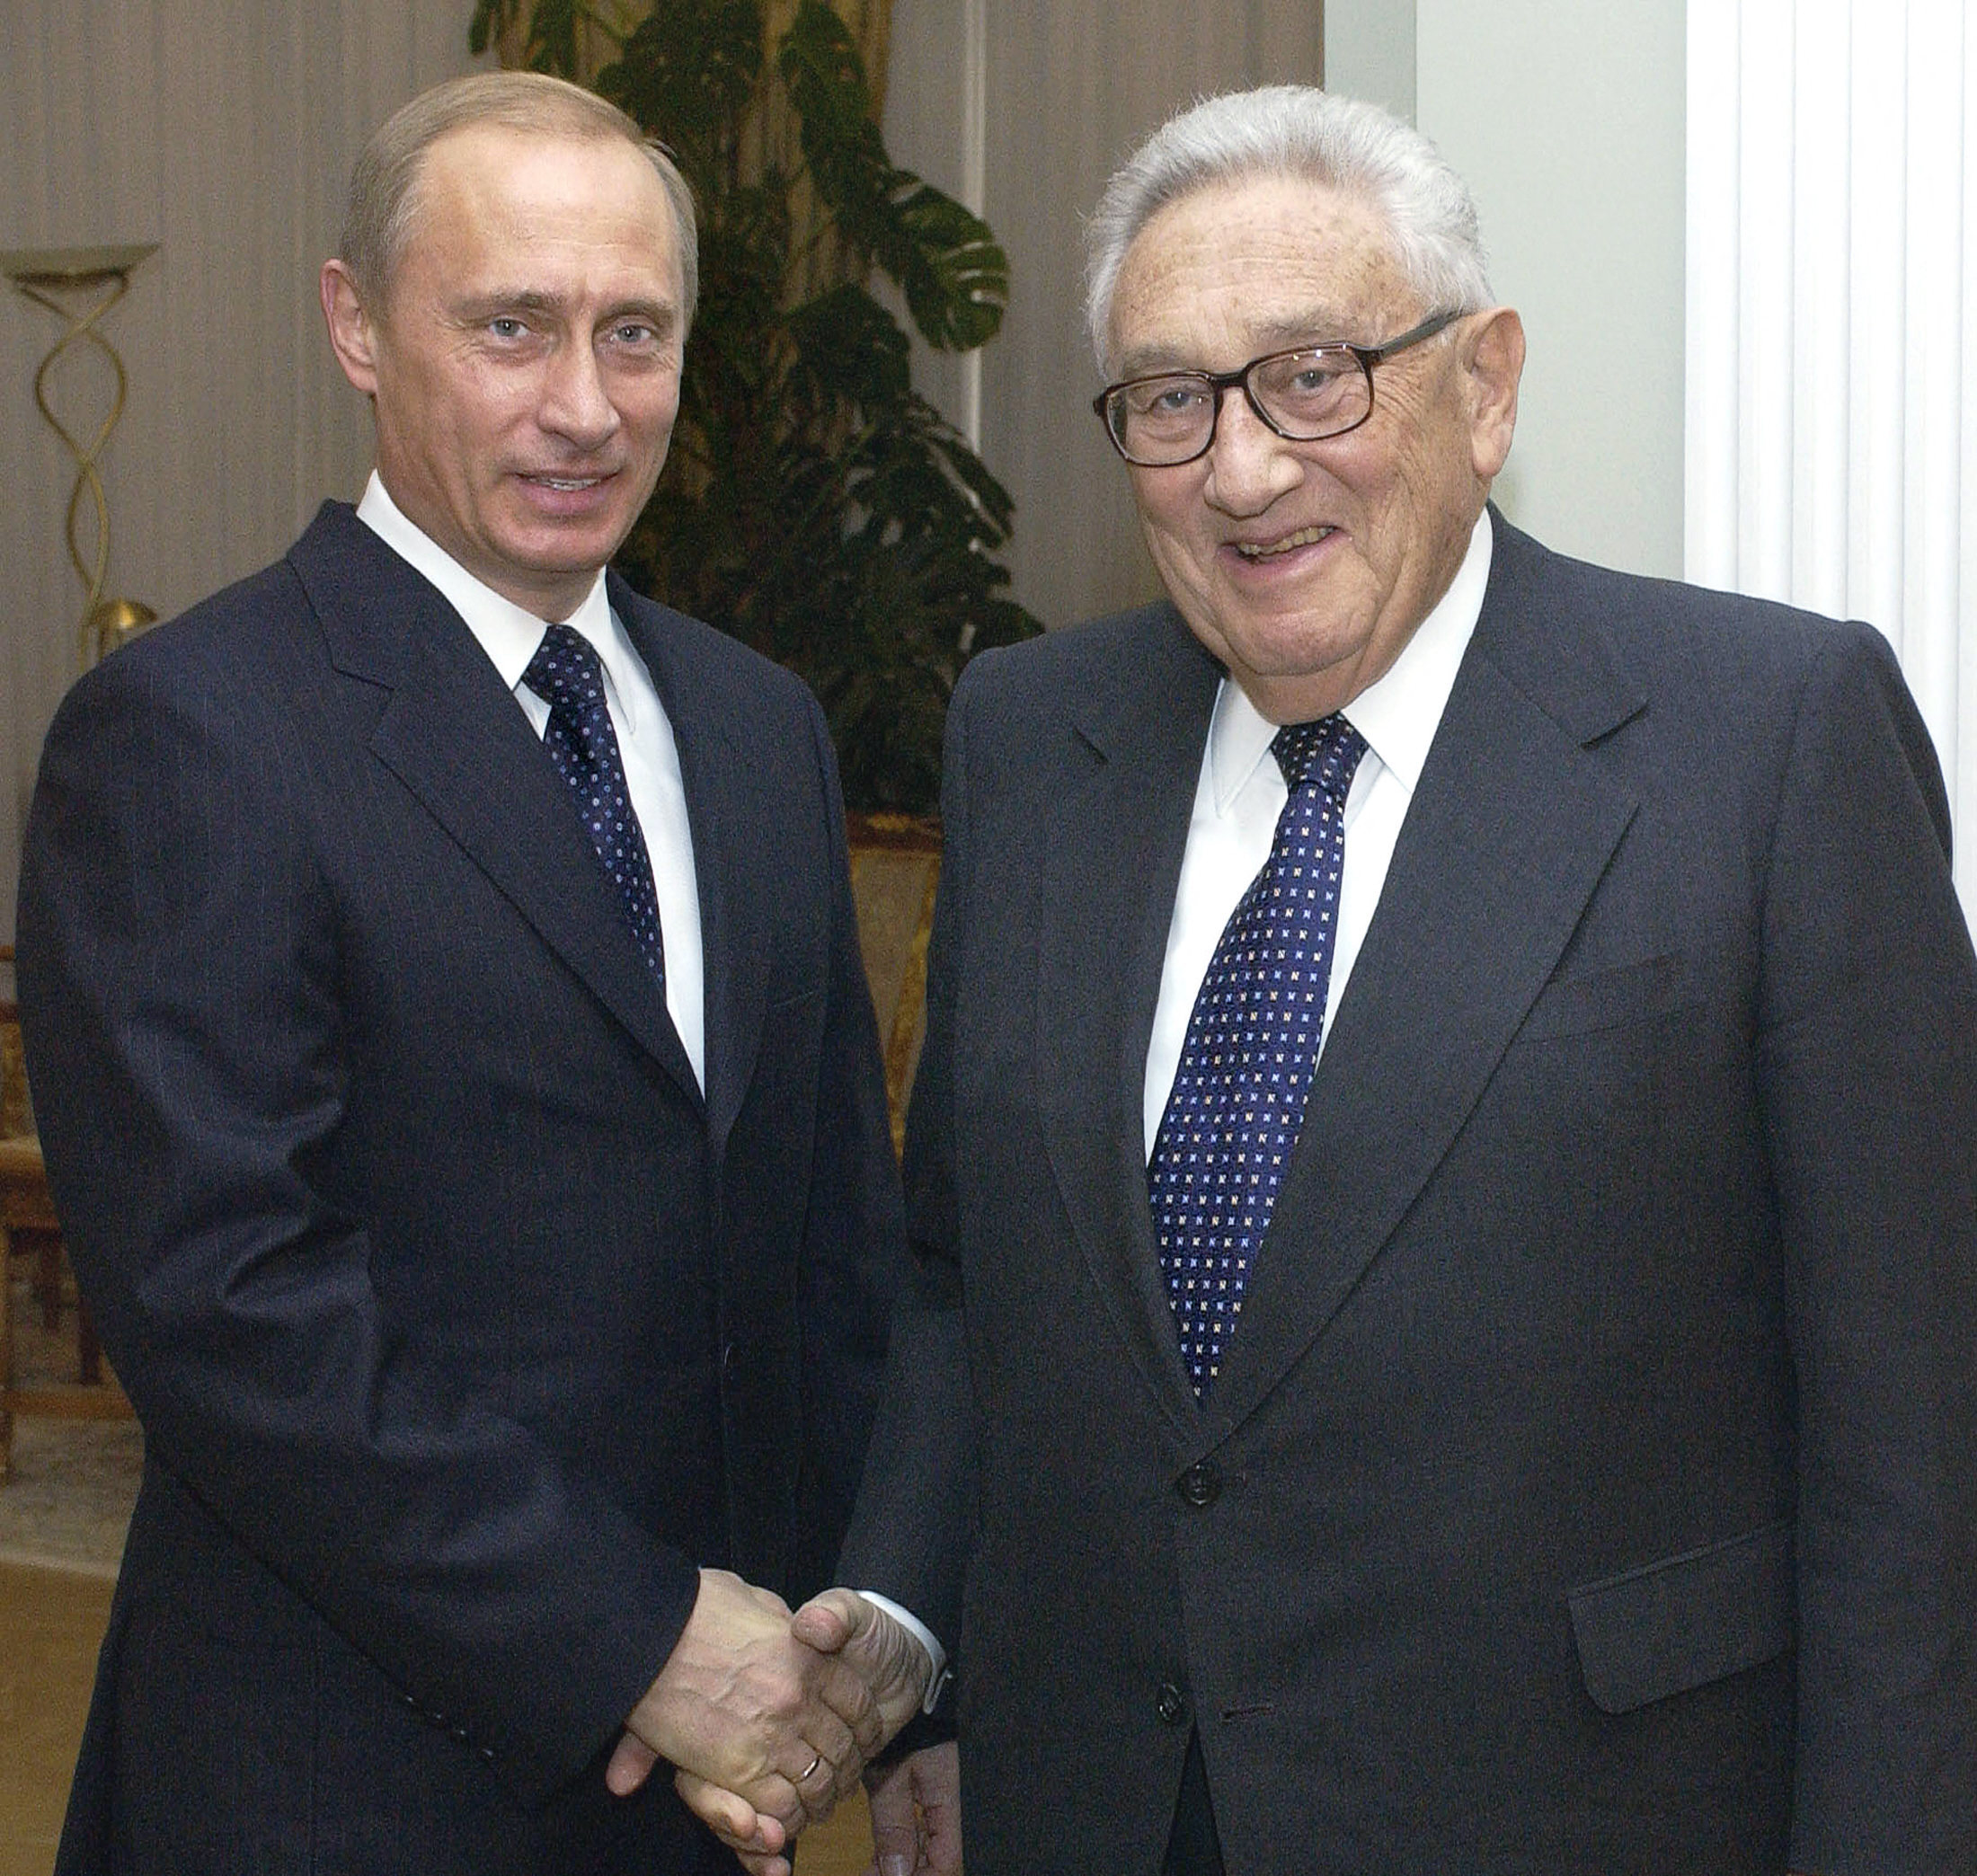 El presidente ruso, Vladimir Putin (izquierda), da la bienvenida al exsecretario de Estado estadounidense, Henry Kissinger, a su oficina en Moscú.